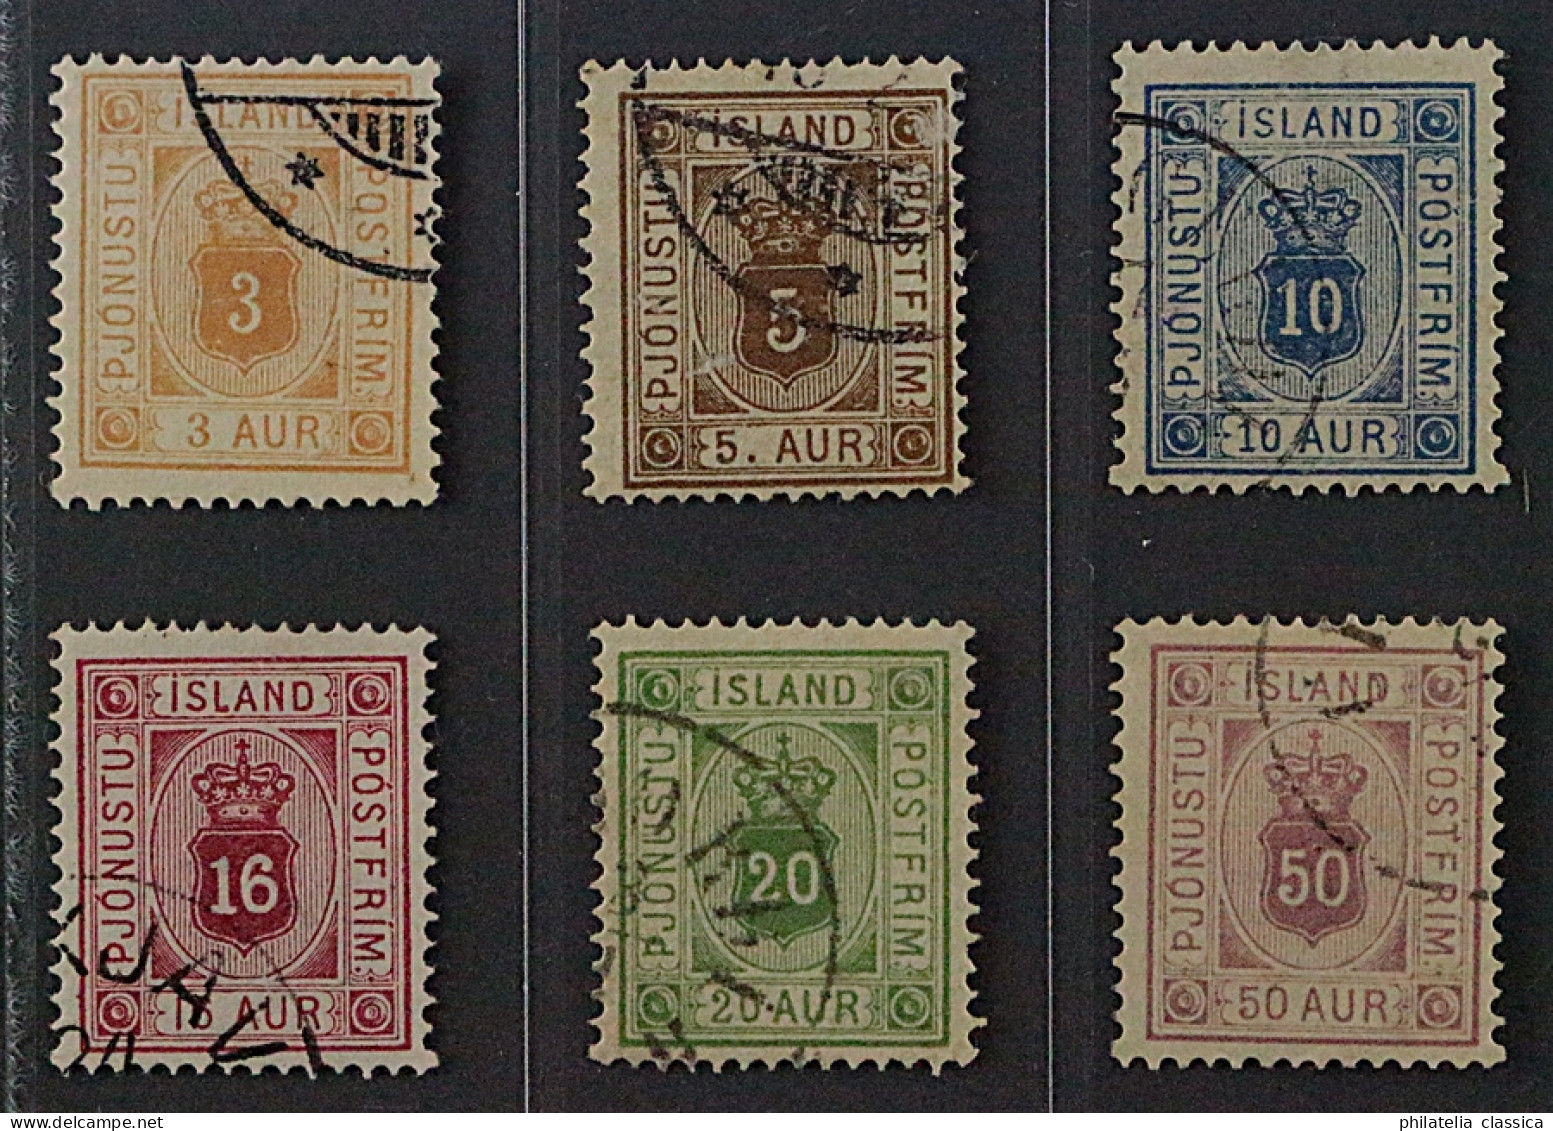 Island  3-8 A,  Dienstmarken 1876/95, Zähnung 14, Sauber Gestempelt, KW 248,- € - Dienstmarken